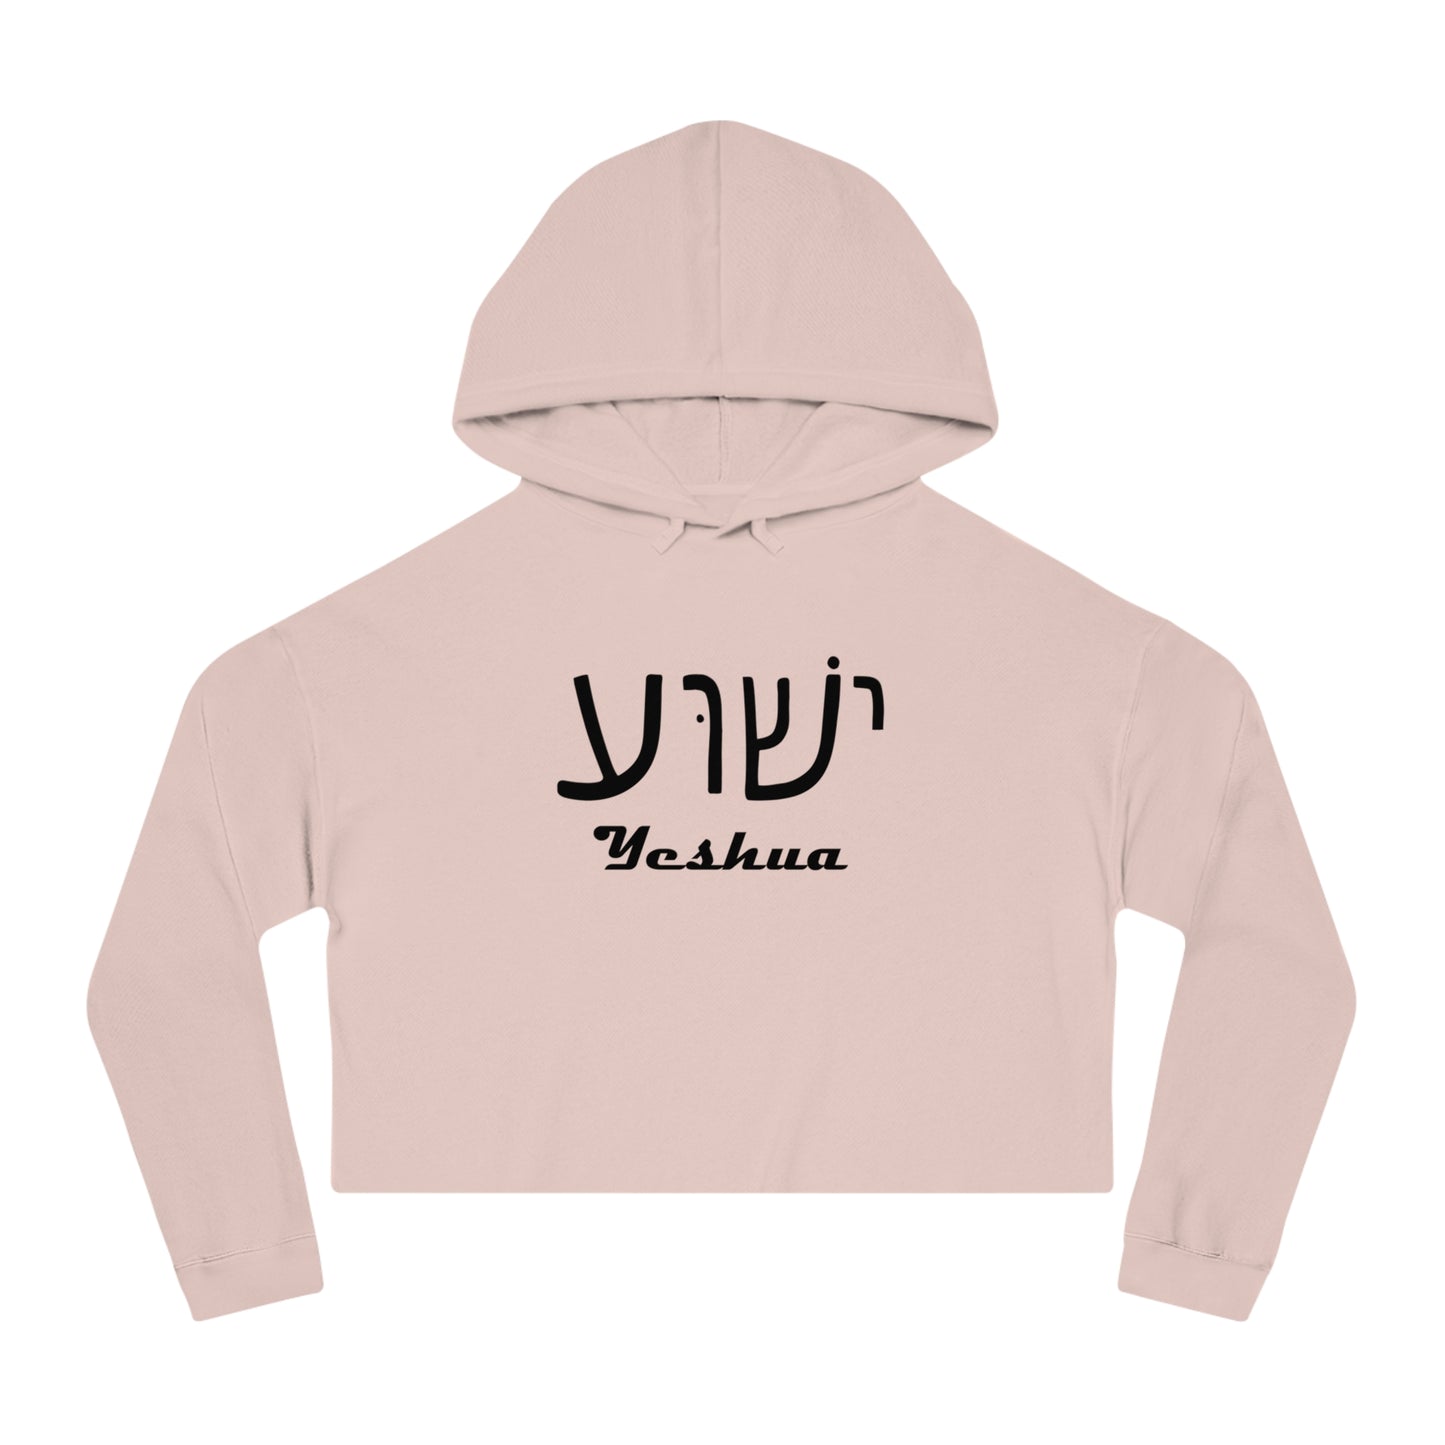 Yeshua Hooded Sweatshirt Women’s